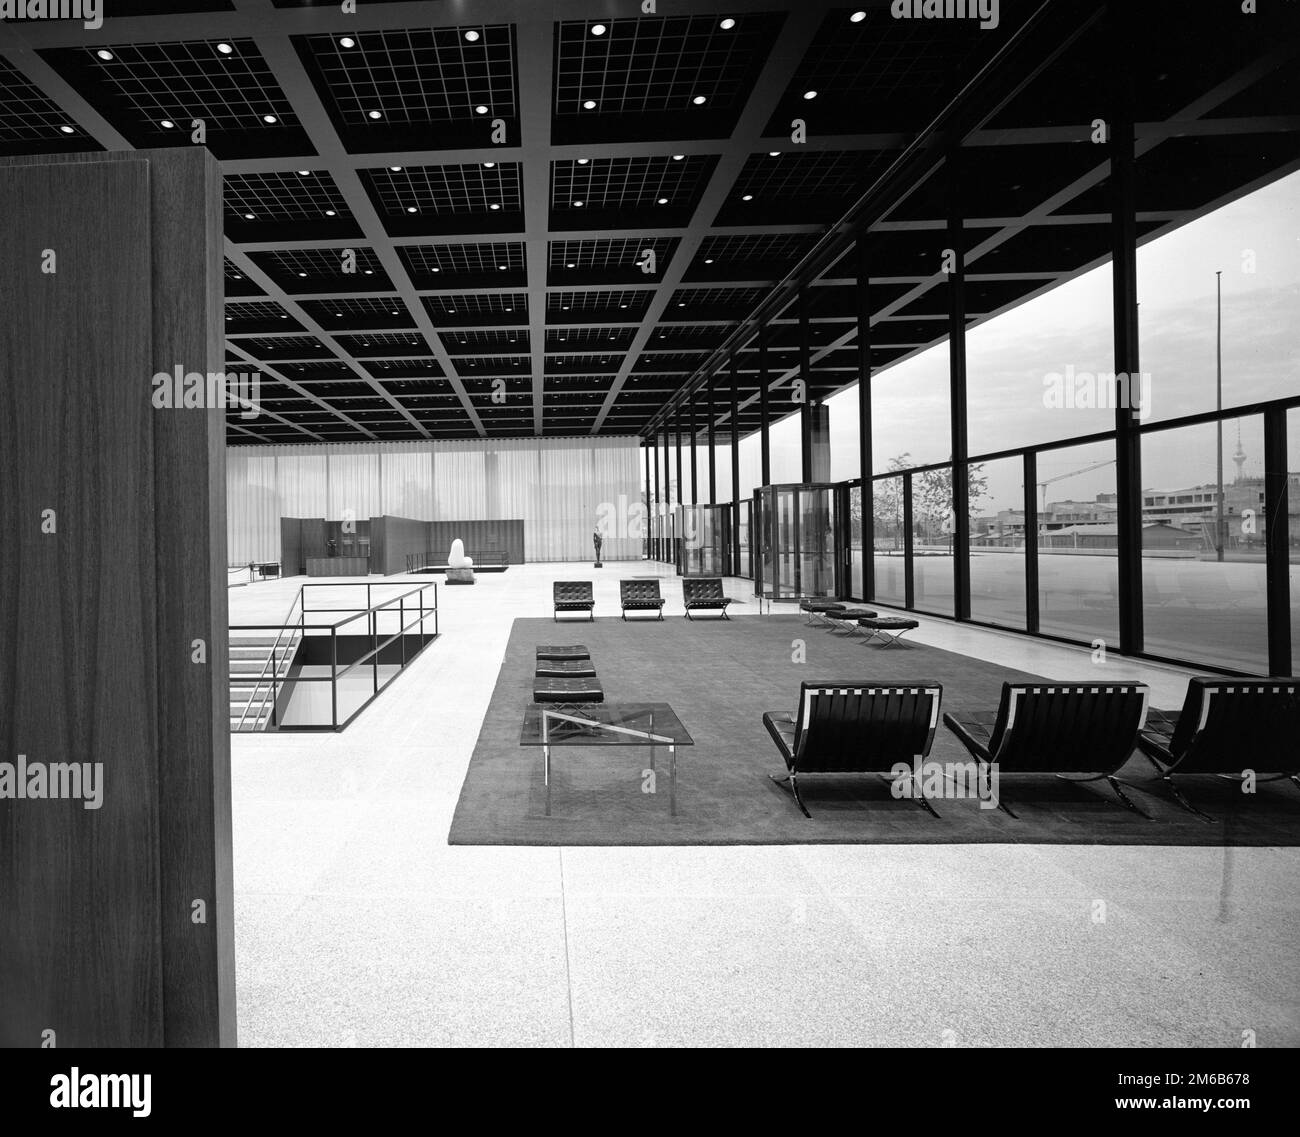 Mies van der Rohe. La Neue Nationalgalerie à Berlin, conçue par l'architecte allemand / américain Ludwig Mies van der Rohe (1886-1969), 1968 Banque D'Images